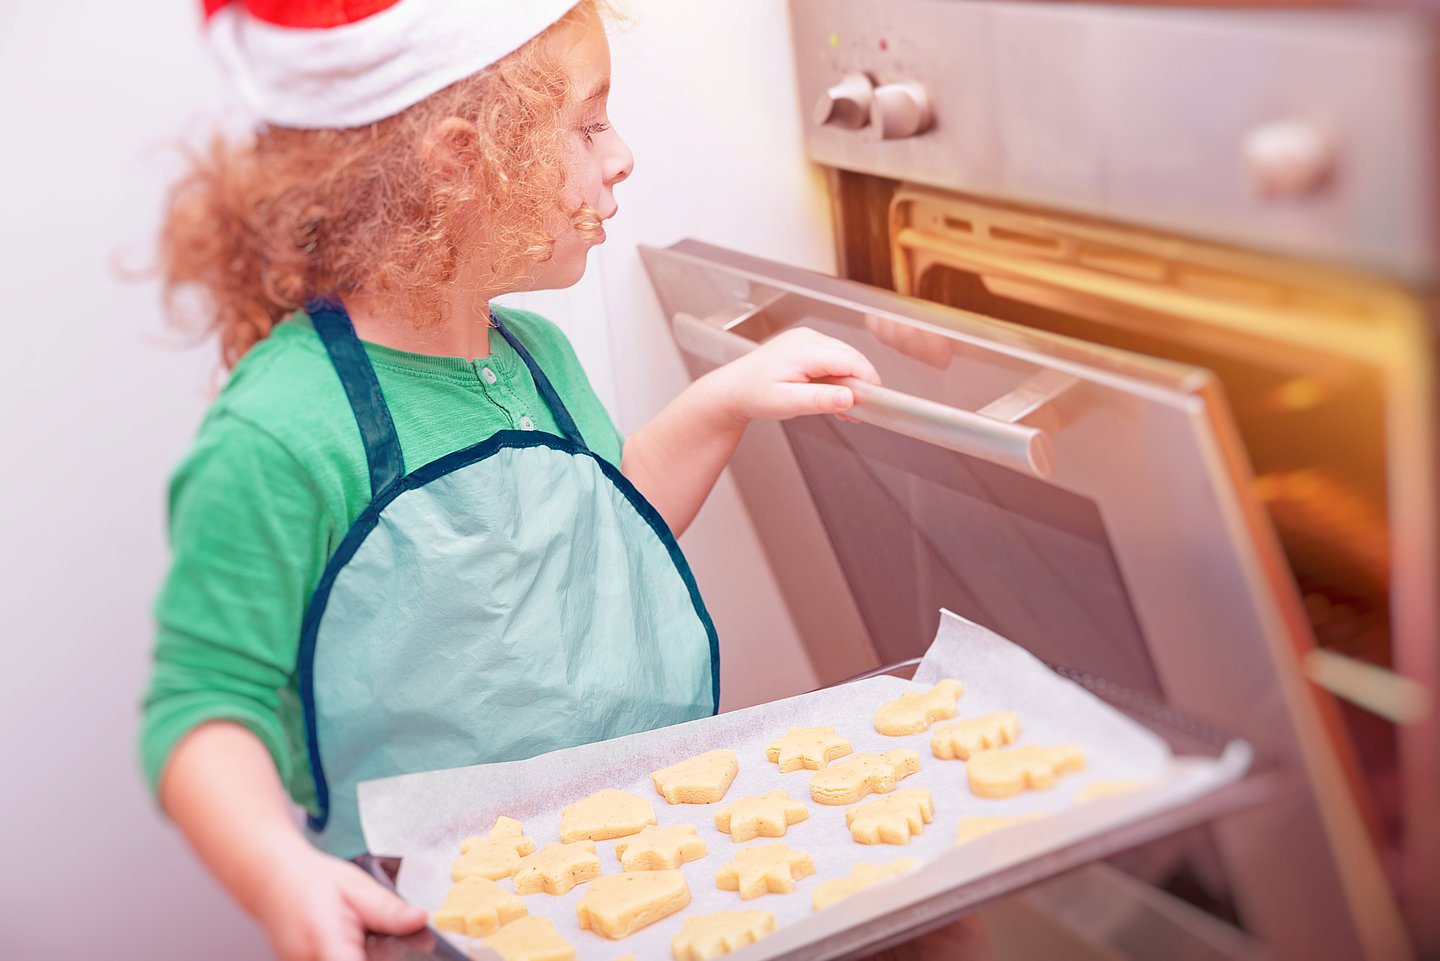 Foto: Ein kleines Mädchen mit Nikolausmütze steht am Backofen und will ein Blech mit ausgestochenen Keksen in den Backofen schieben.